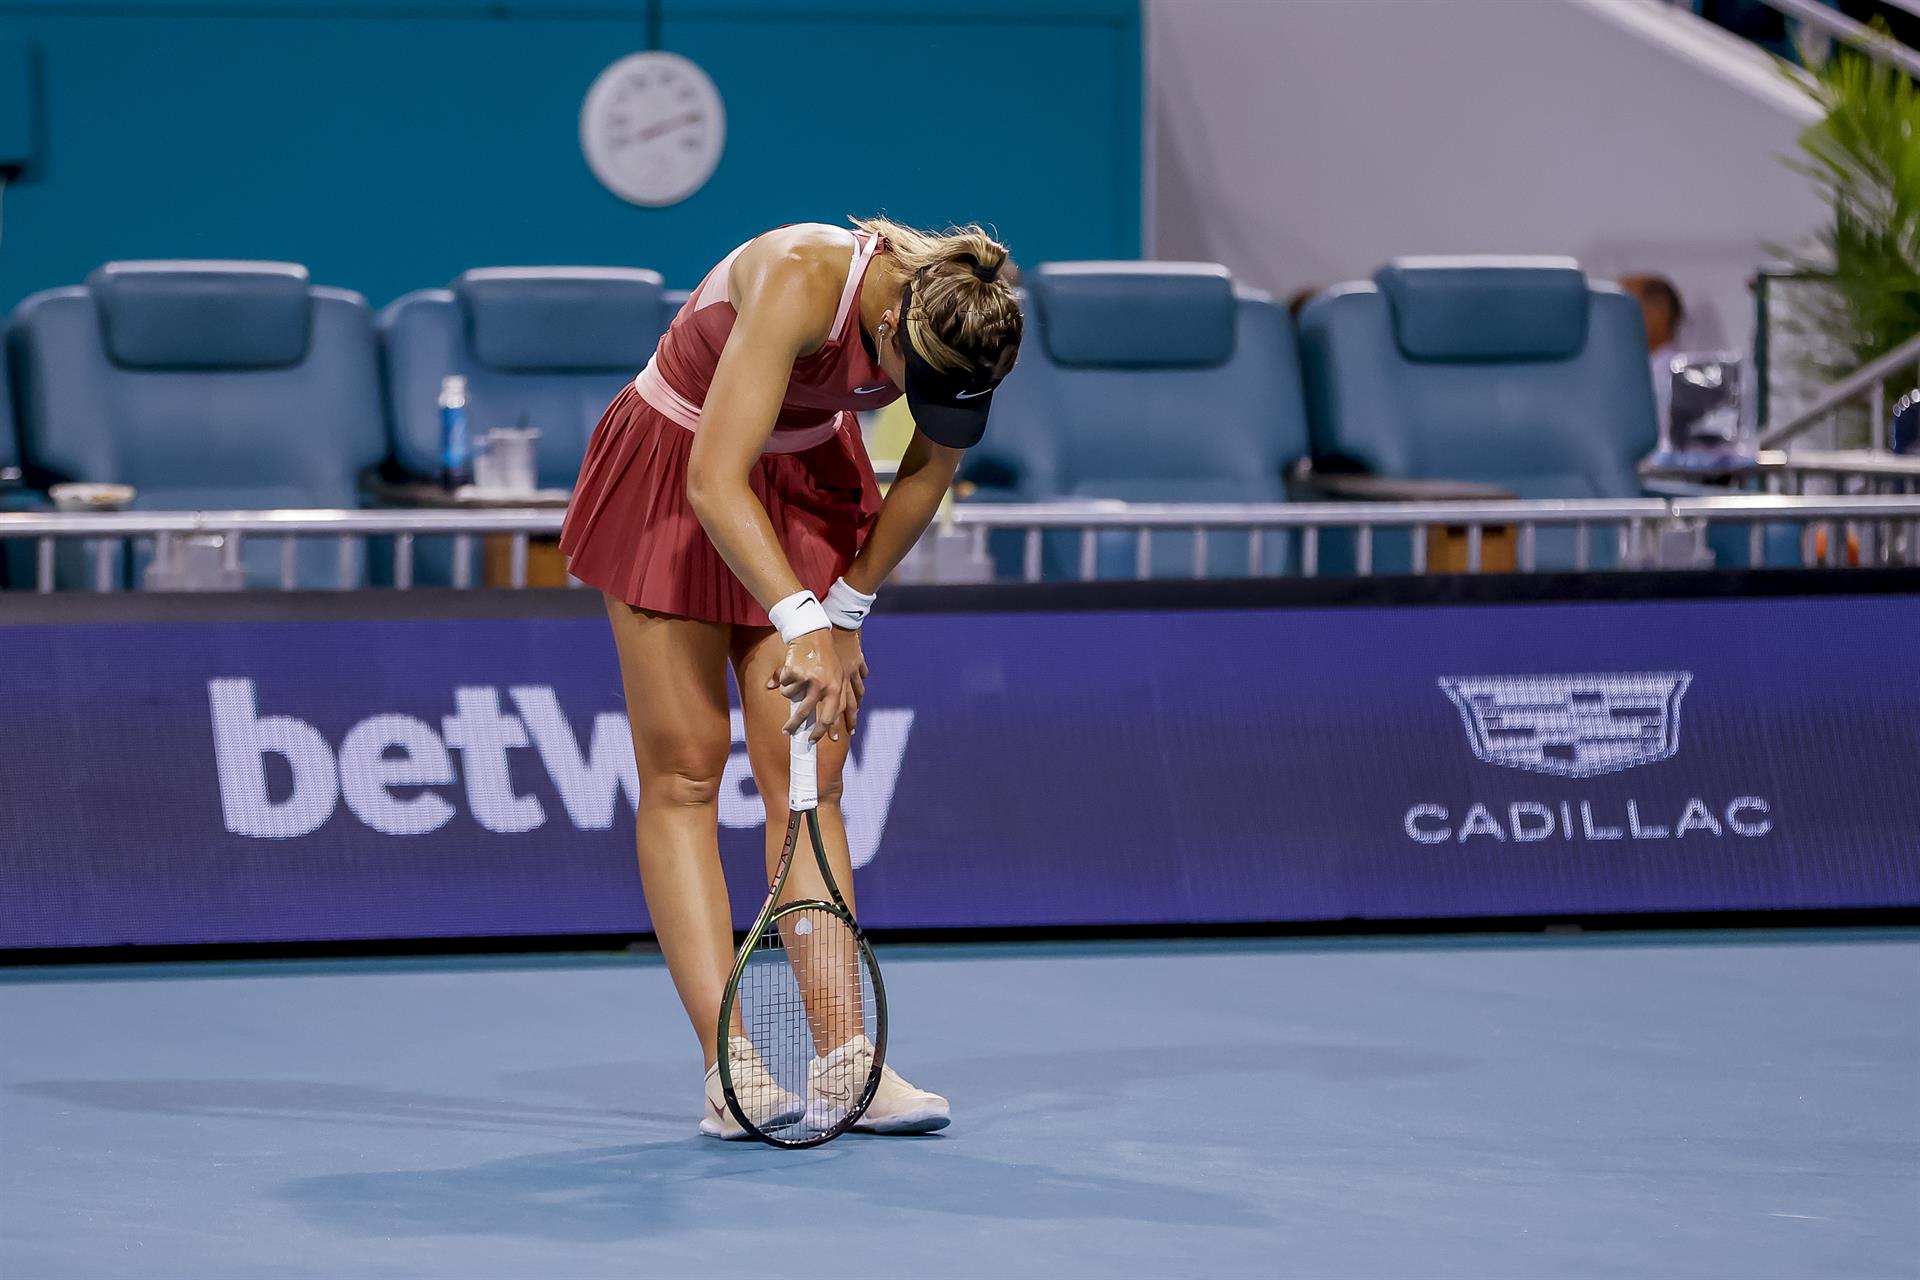 La tenista Paula Badosa se retira entre lágrimas tras 17 minutos de partido en Miami